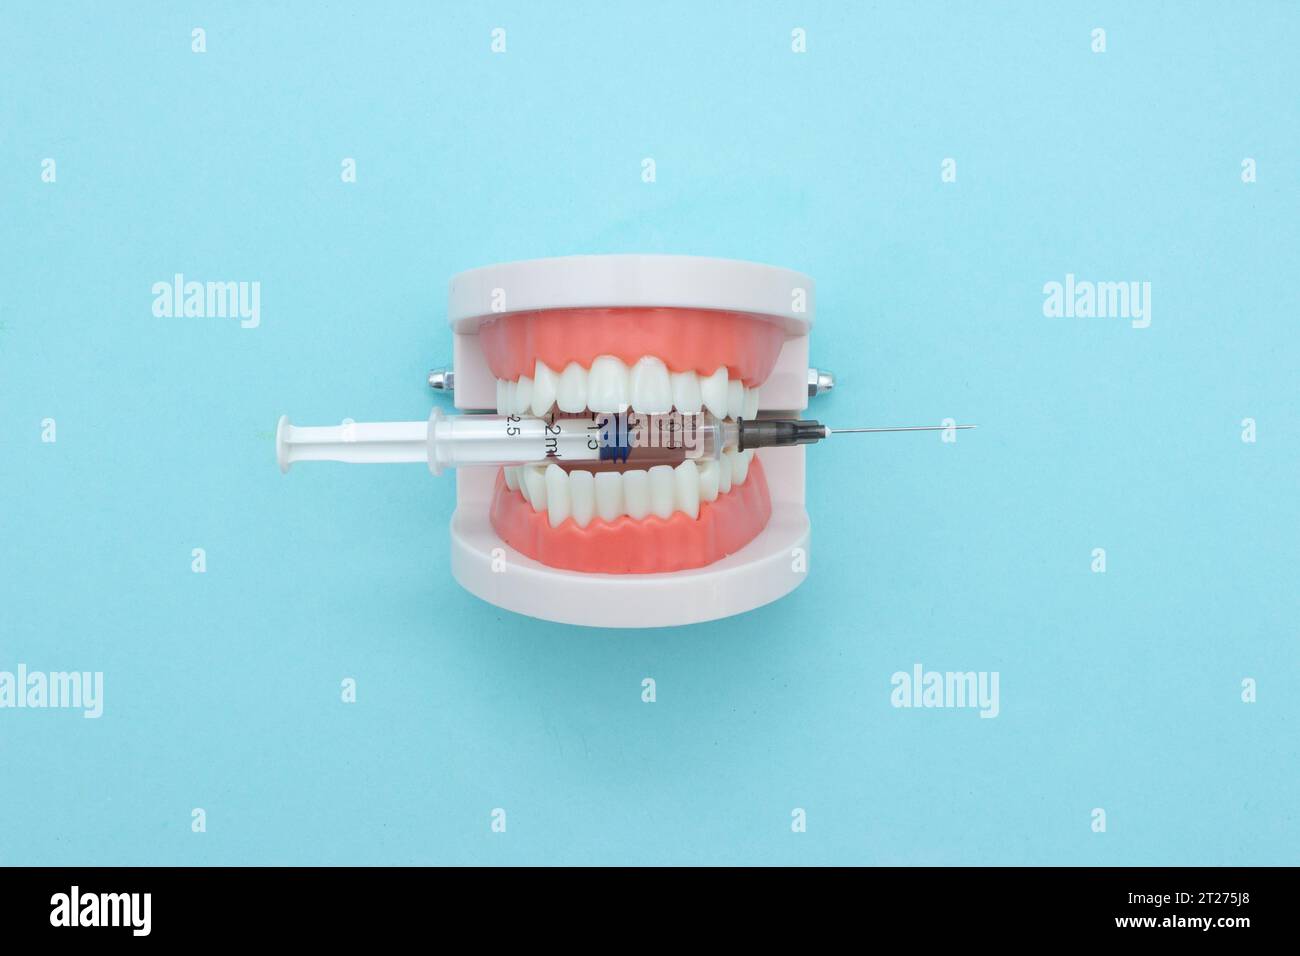 Denti dentali modello dentista contiene siringa in plastica monouso per dentista. Tema odontoiatrico ortodontico. Concetto di assistenza sanitaria dentale Foto Stock